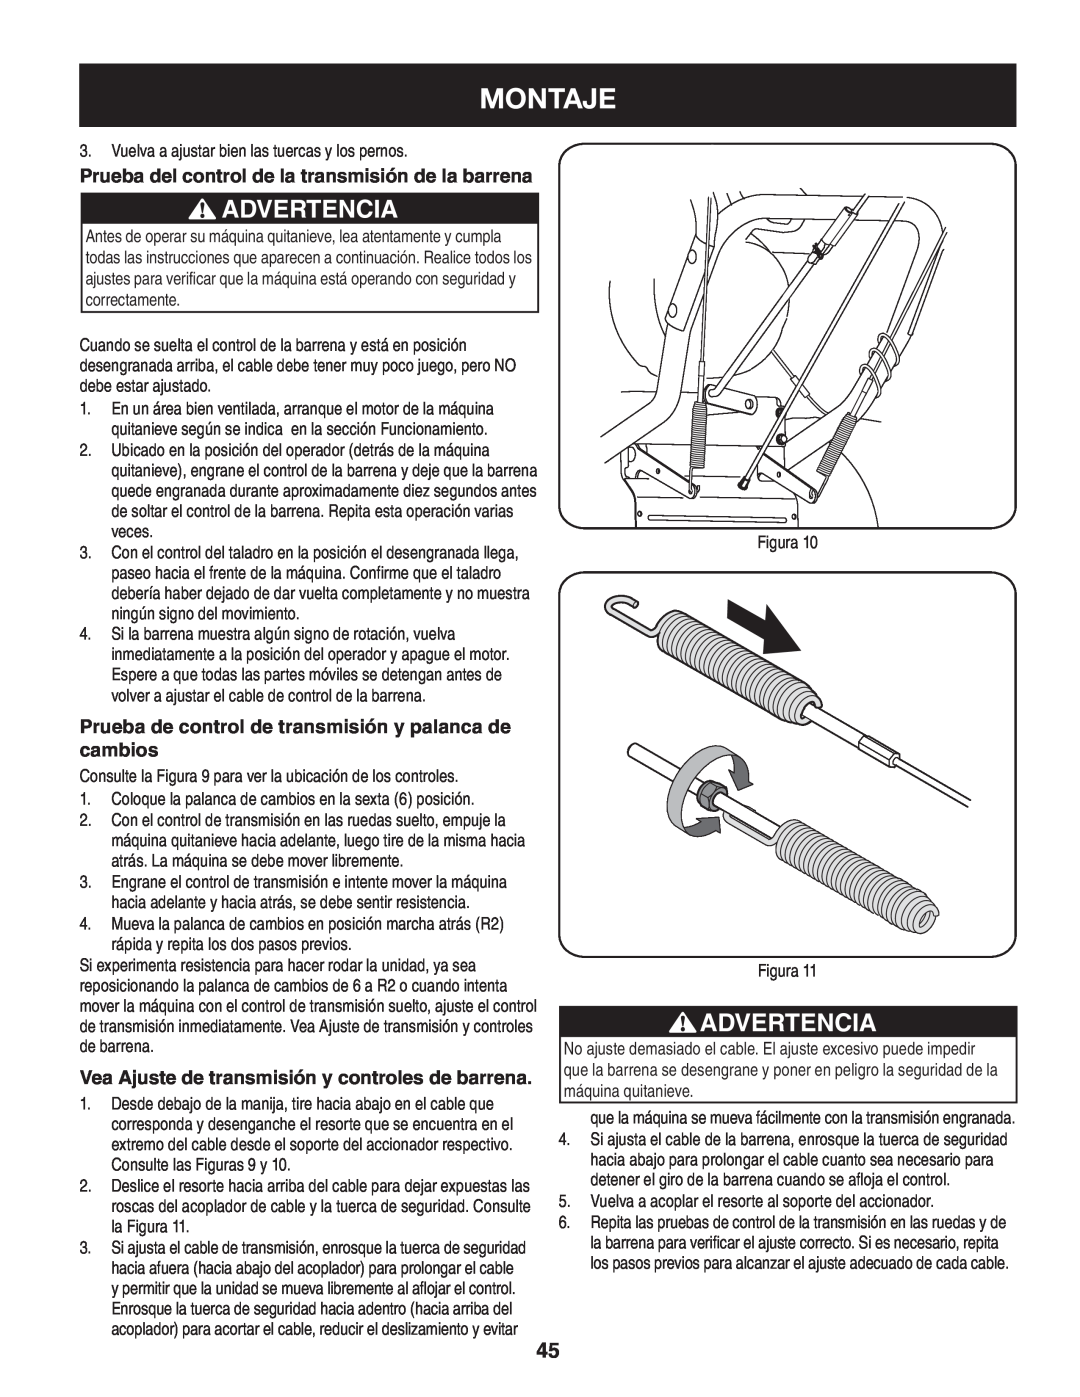 Craftsman 247.88845 manual Montaje, Advertencia, Prueba del control de la transmisión de la barrena 